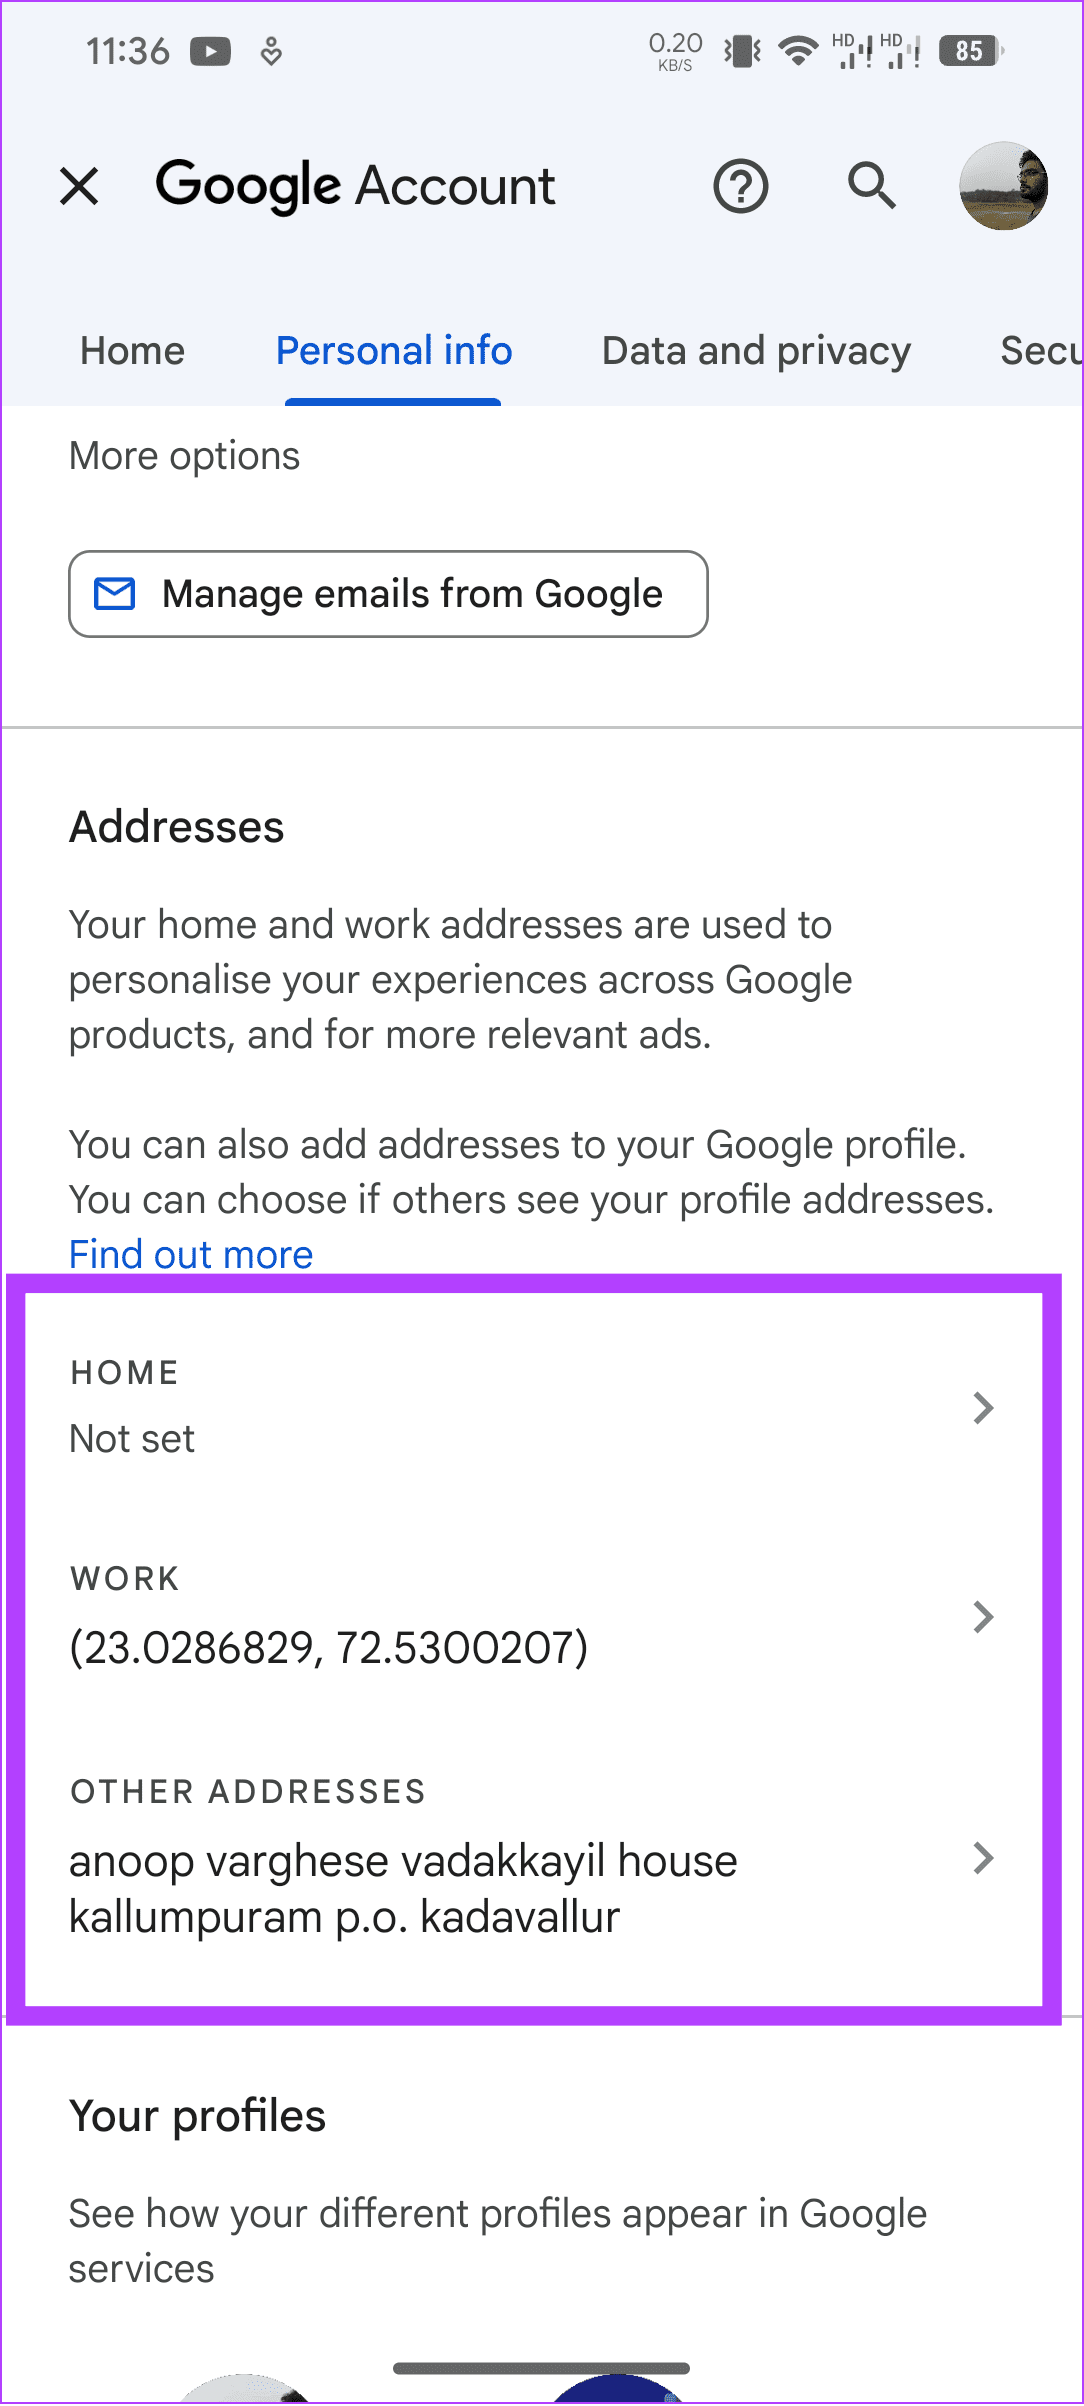 آدرسی را که می خواهید حذف کنید انتخاب کنید